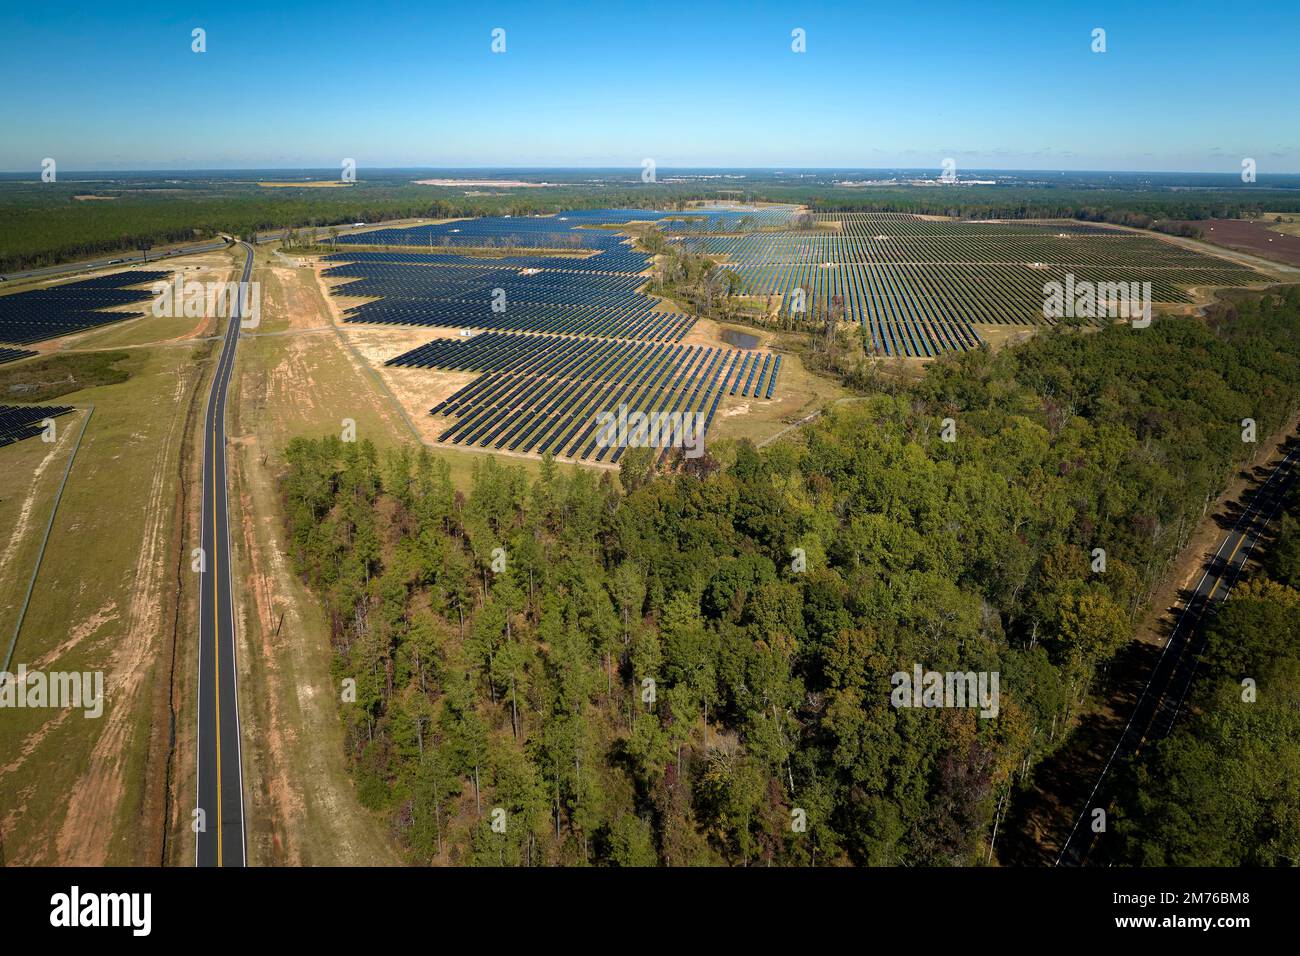 Luftaufnahme eines großen nachhaltigen Elektrokraftwerks mit vielen Reihen von Photovoltaik-Solarzellen zur Erzeugung sauberer elektrischer Energie. Erneuerbar Stockfoto